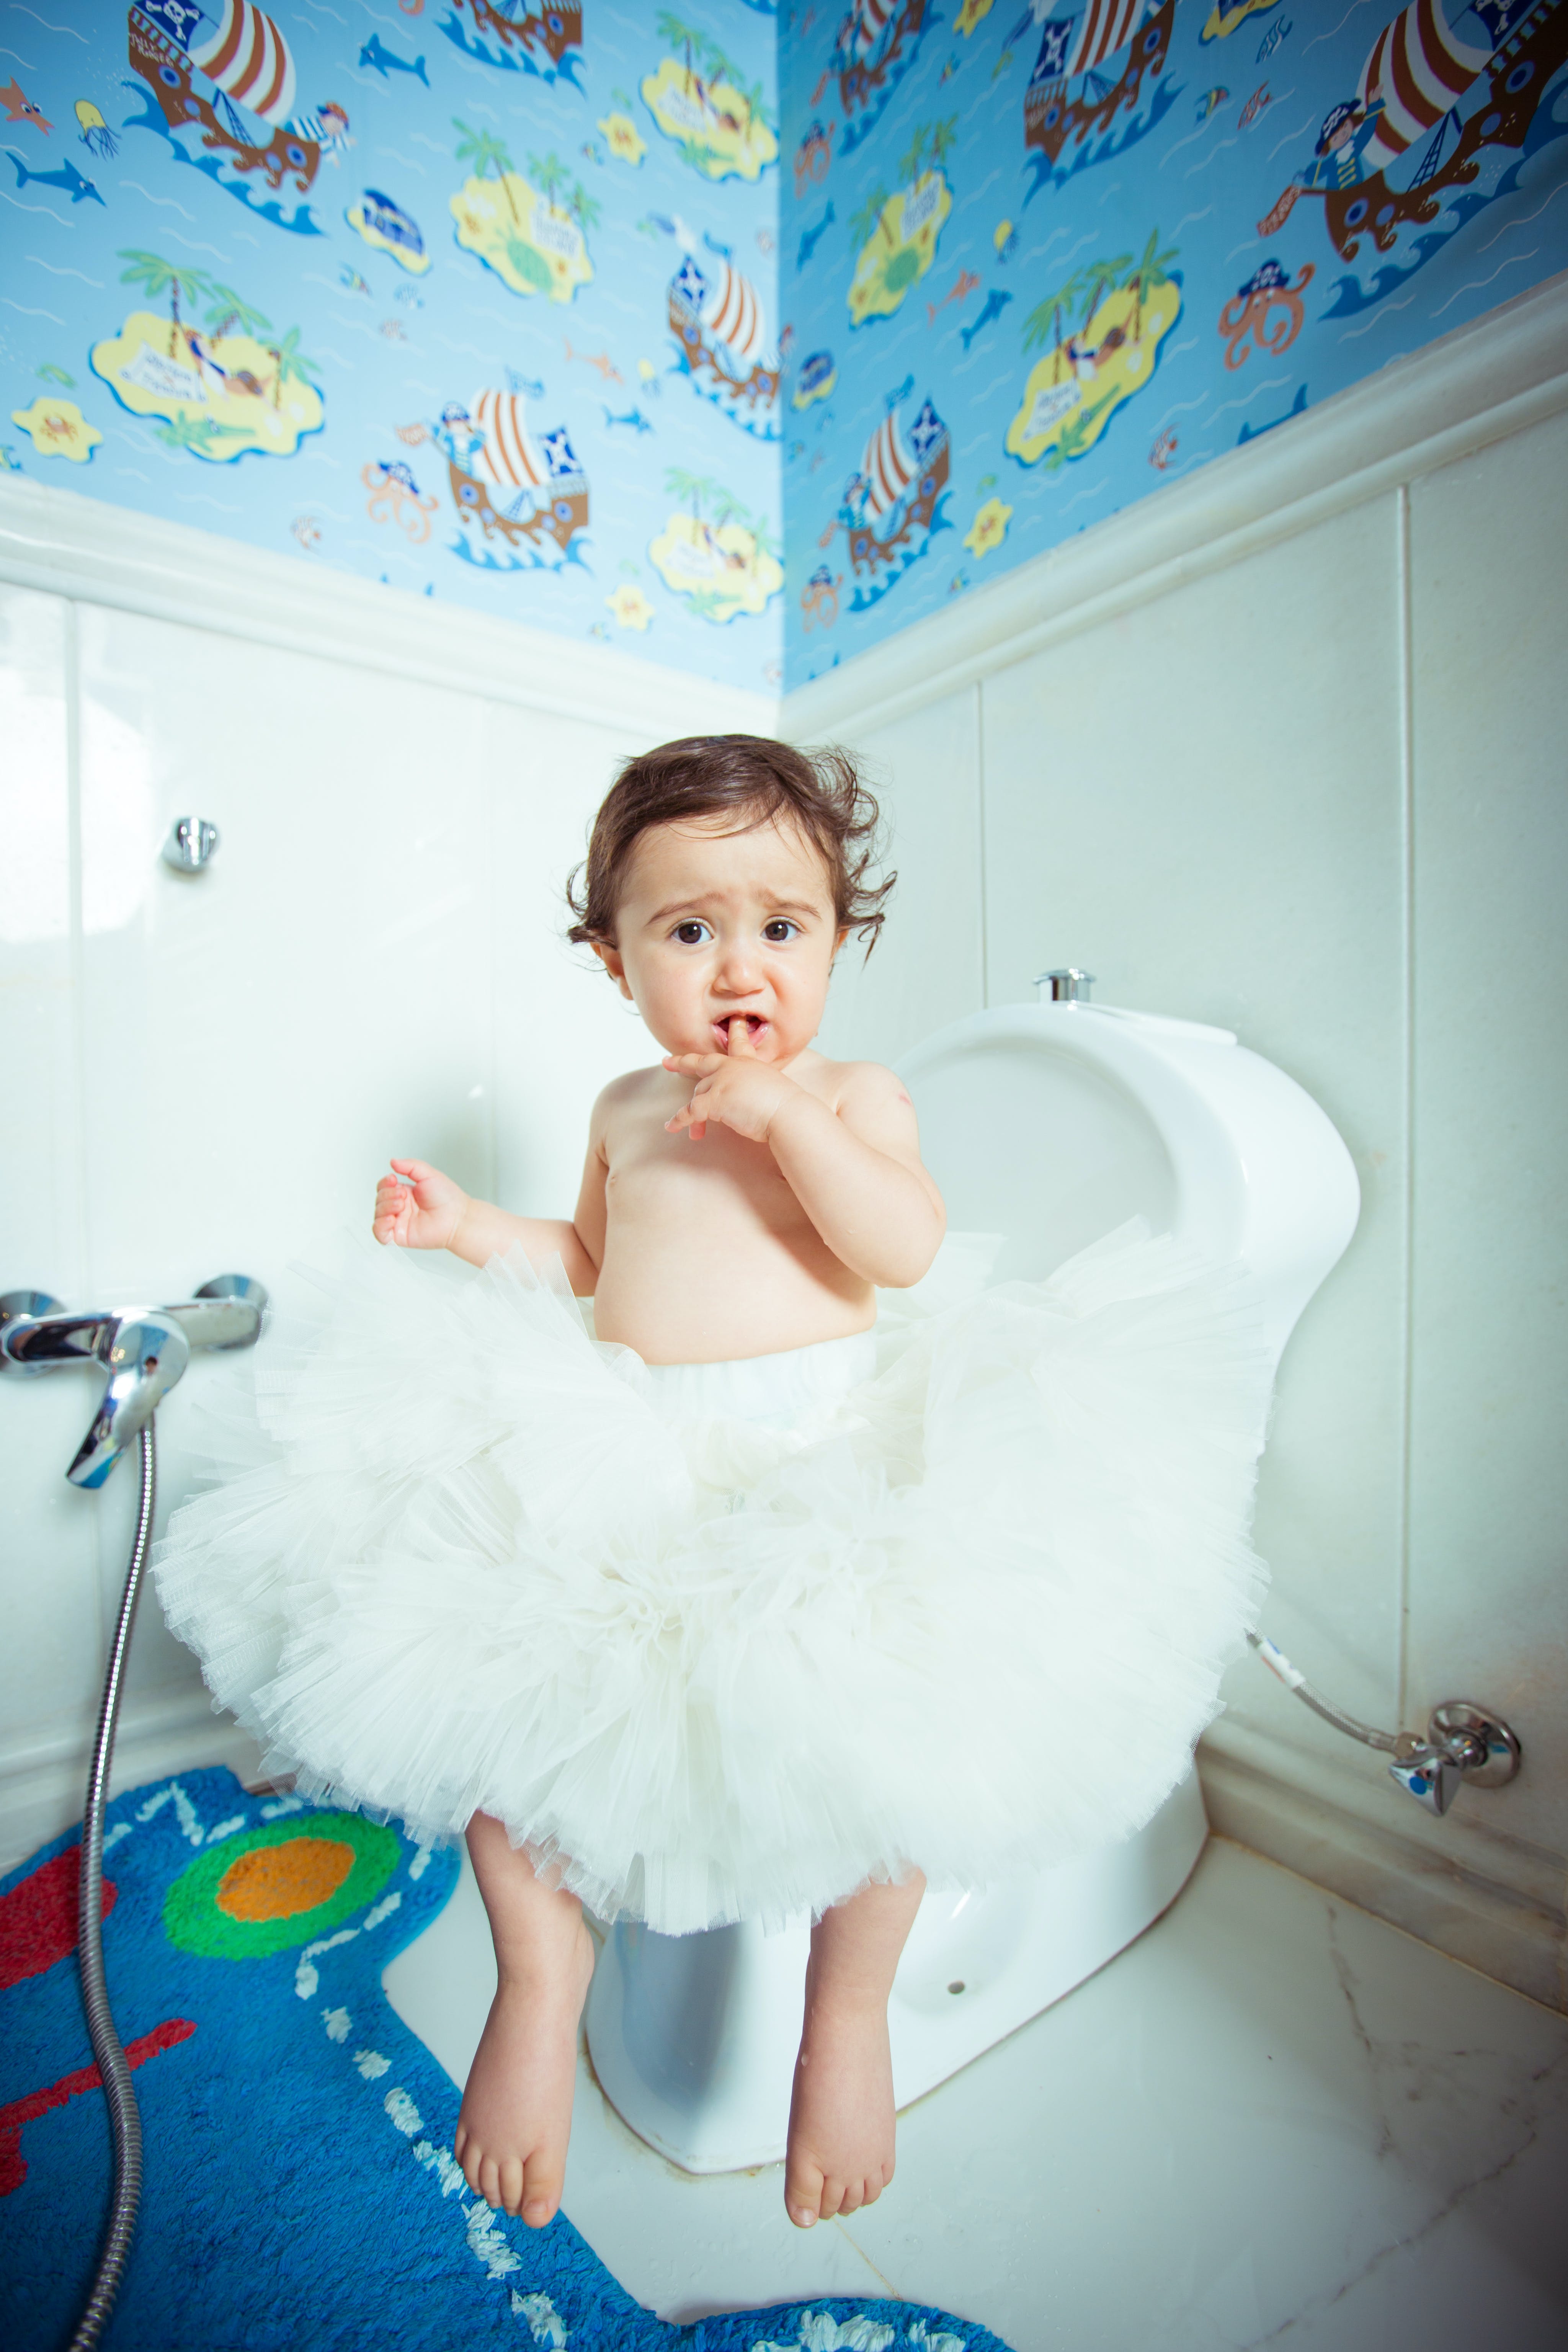 Ein Kind, das auf einer Toilette sitzt | Quelle: Pexels